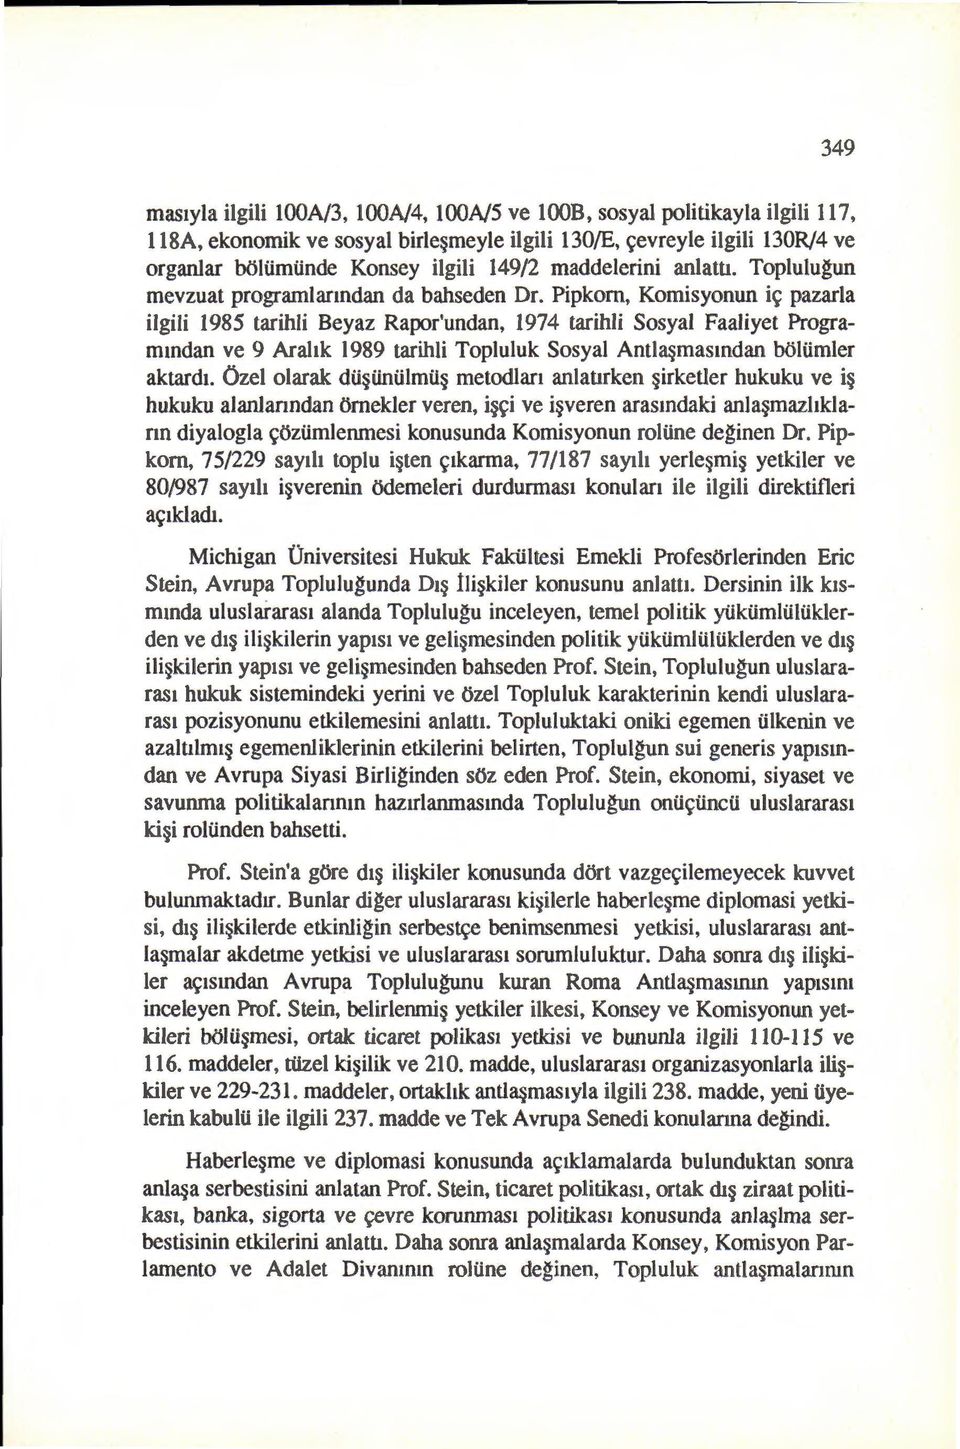 Pipkom, Komisyonun i~ pazarla ilgili 1985 tarihli Beyaz Rapor'undan, 1974 tarihli Sosya1 Faaliyet Programmdan ve 9 Arahk 1989 tarihli Topluluk Sosyal Antla masmdan boltimler aktardt.